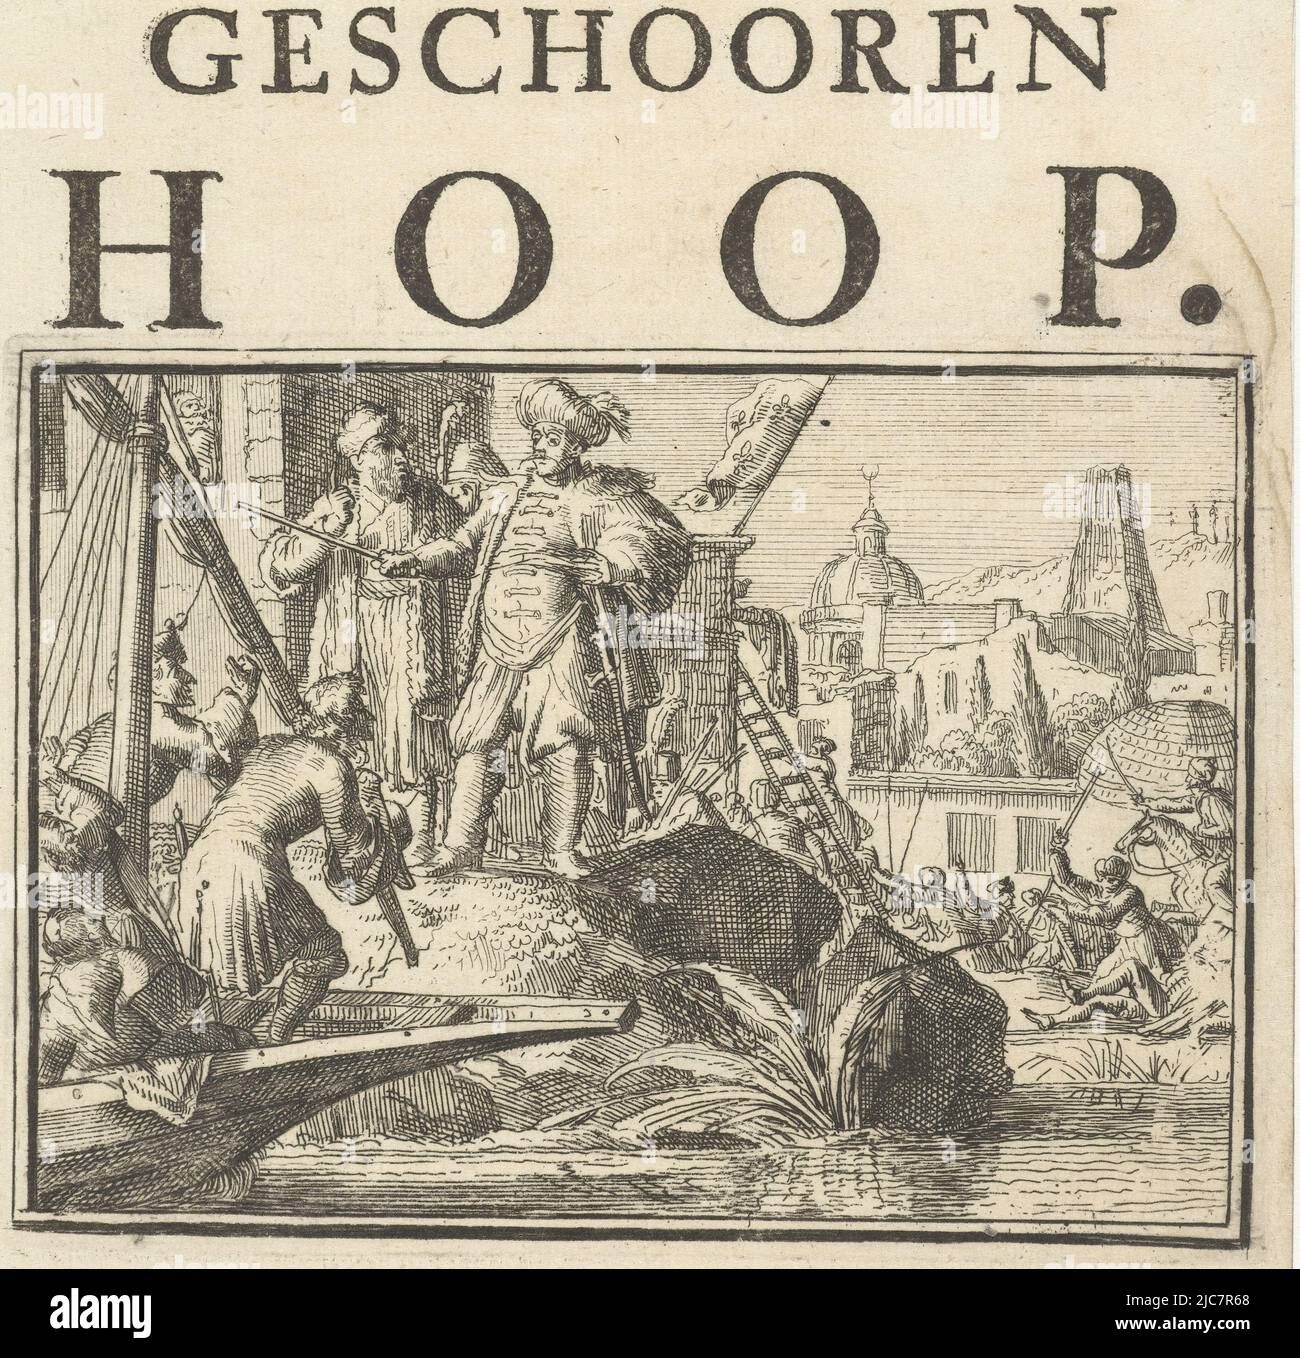 Página de título del folleto: The Shattered Hope, 1702. Llegada de un barco  a una ciudad turca o del norte de África con la bandera francesa volando.  Título del folleto: El Geschooren